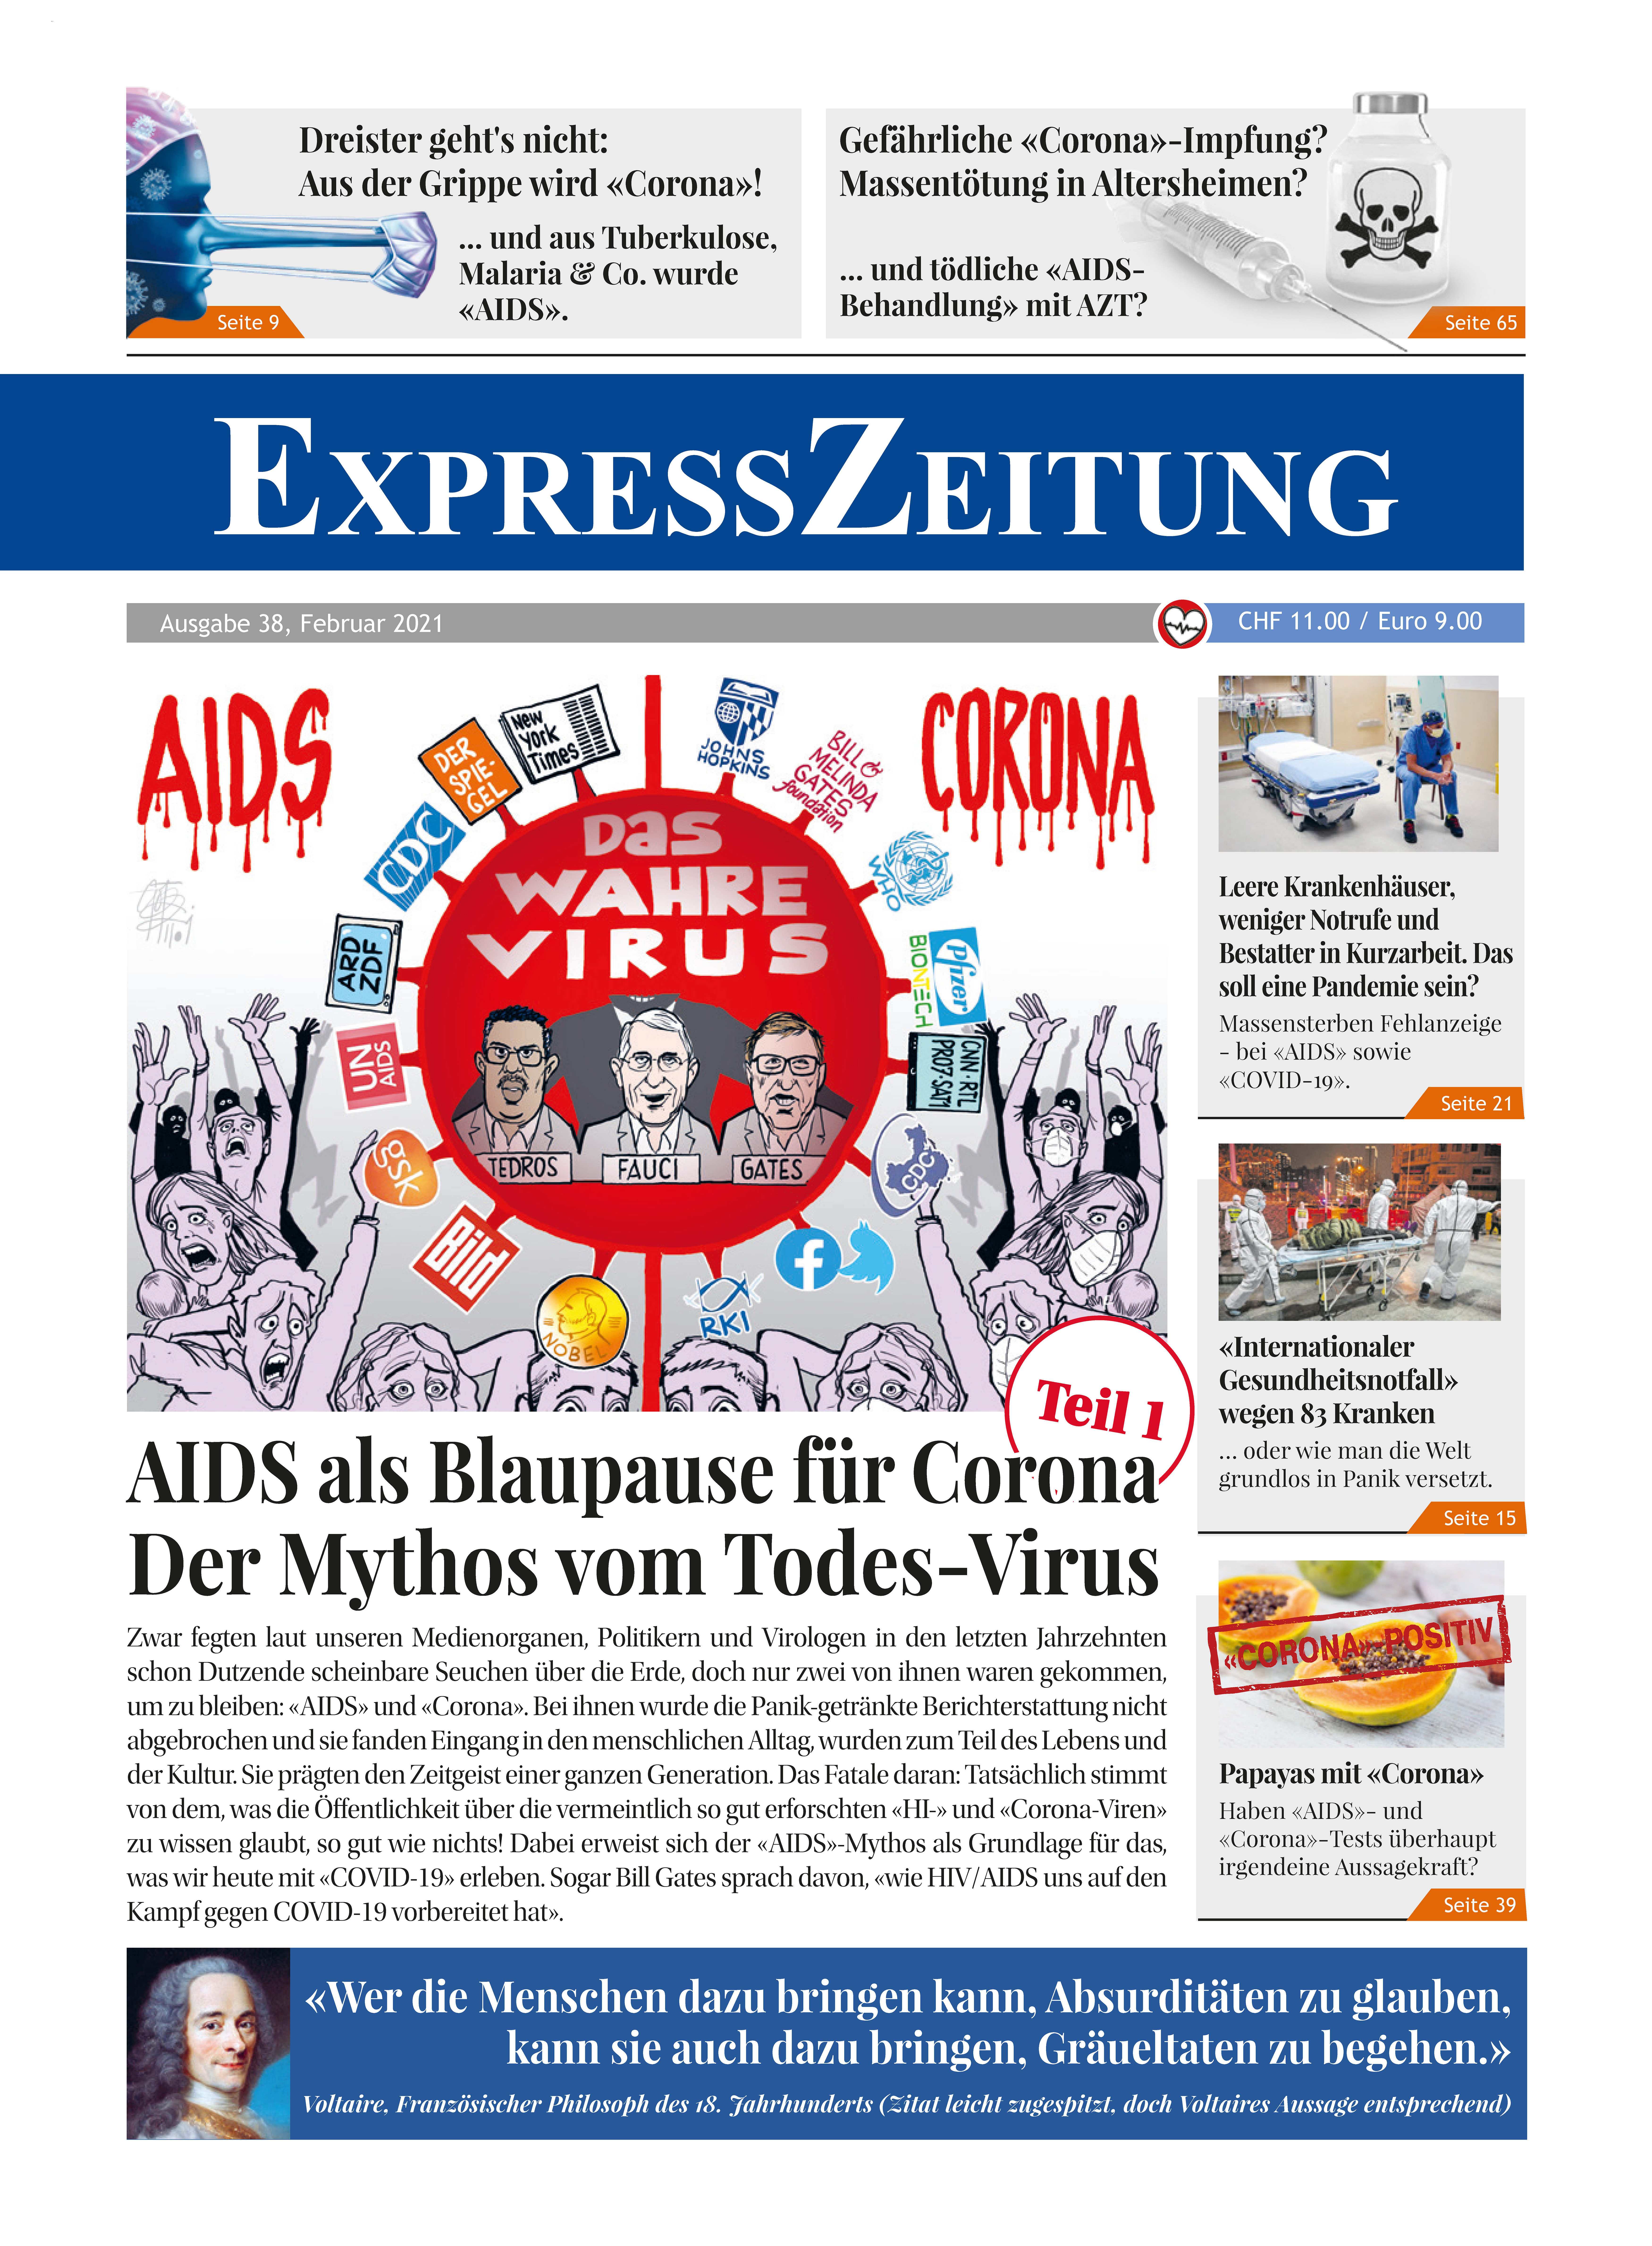 Ausgabe 38:  AIDS als Blaupause für Corona (Teil 1): Der Mythos vom Todes-Virus